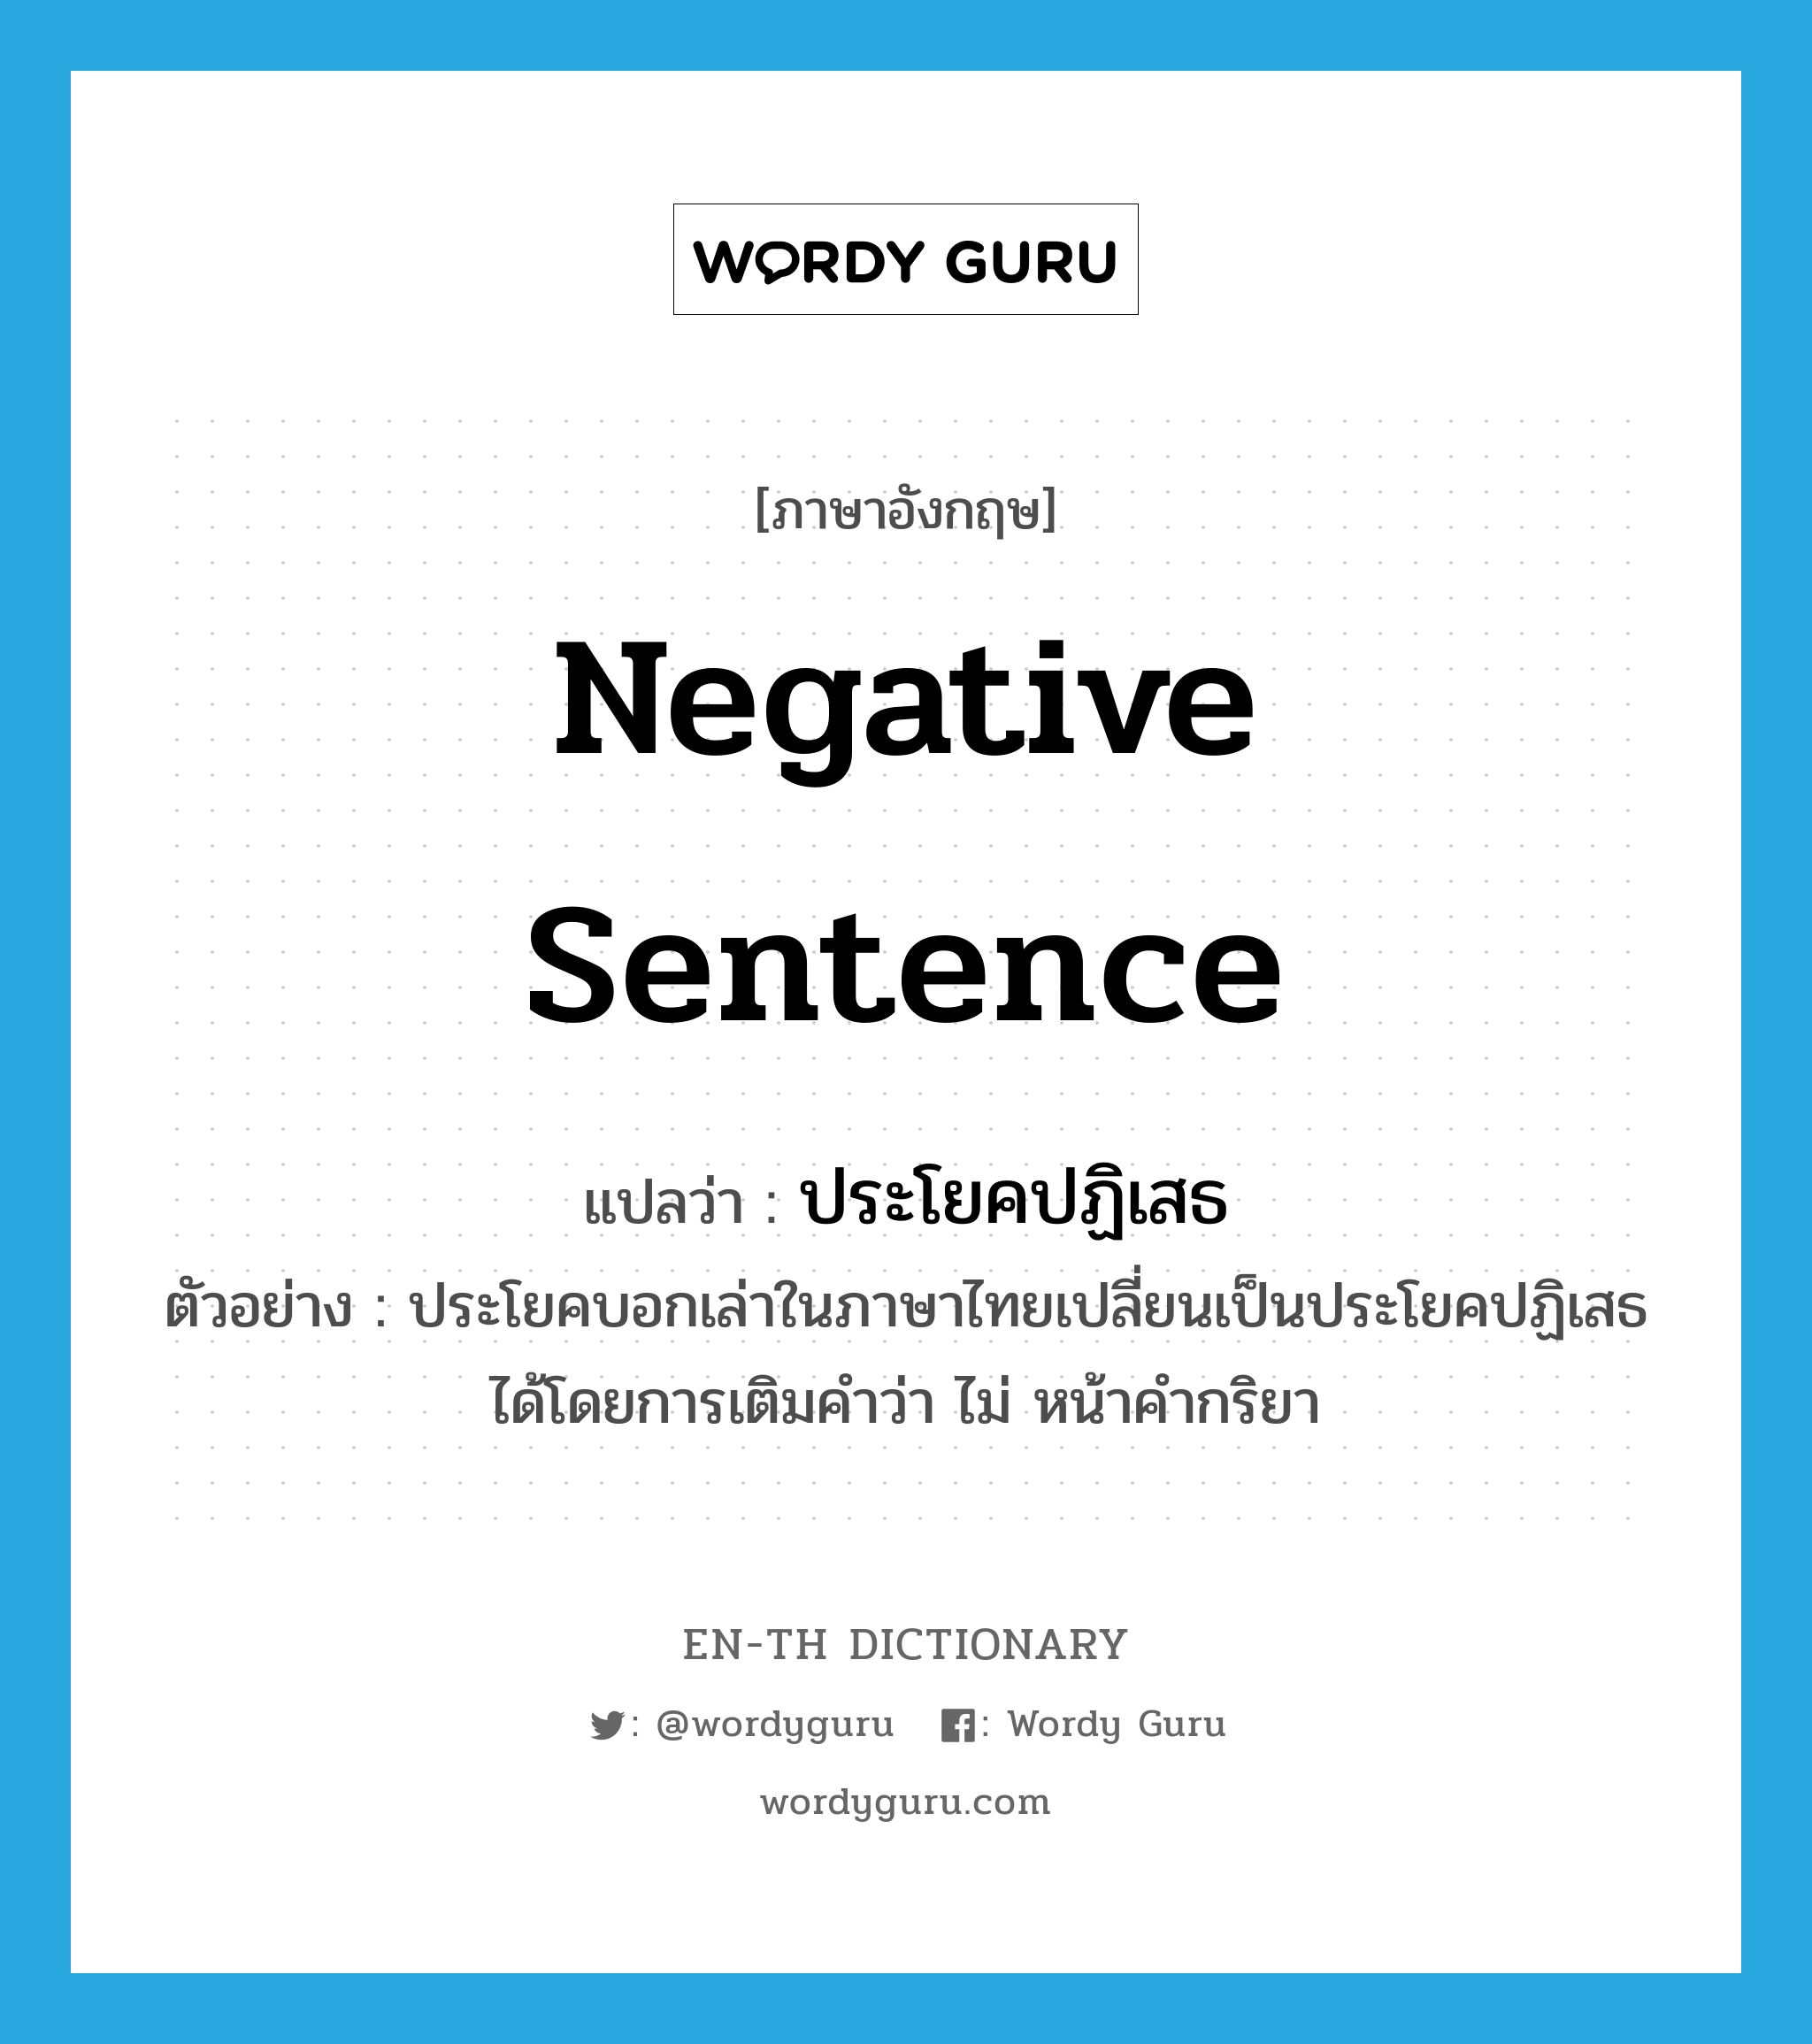 negative sentence แปลว่า?, คำศัพท์ภาษาอังกฤษ negative sentence แปลว่า ประโยคปฏิเสธ ประเภท N ตัวอย่าง ประโยคบอกเล่าในภาษาไทยเปลี่ยนเป็นประโยคปฏิเสธได้โดยการเติมคำว่า ไม่ หน้าคำกริยา หมวด N